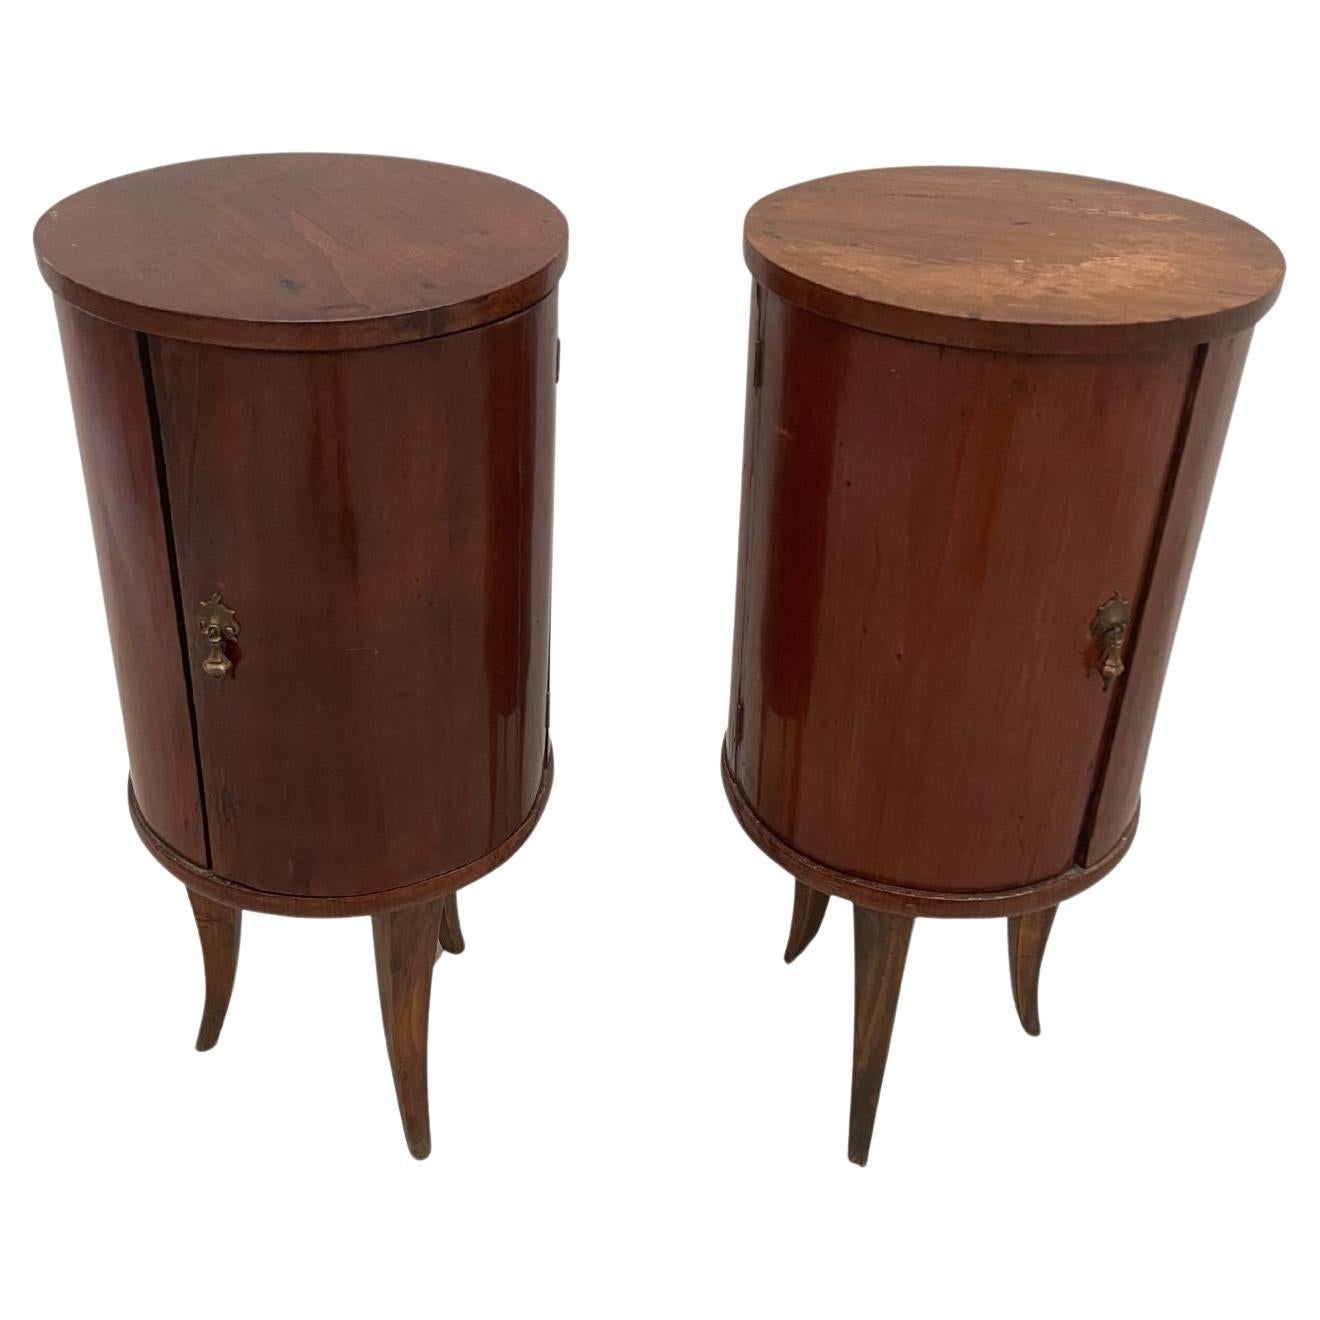 Original wooden vintage round cabinet set 